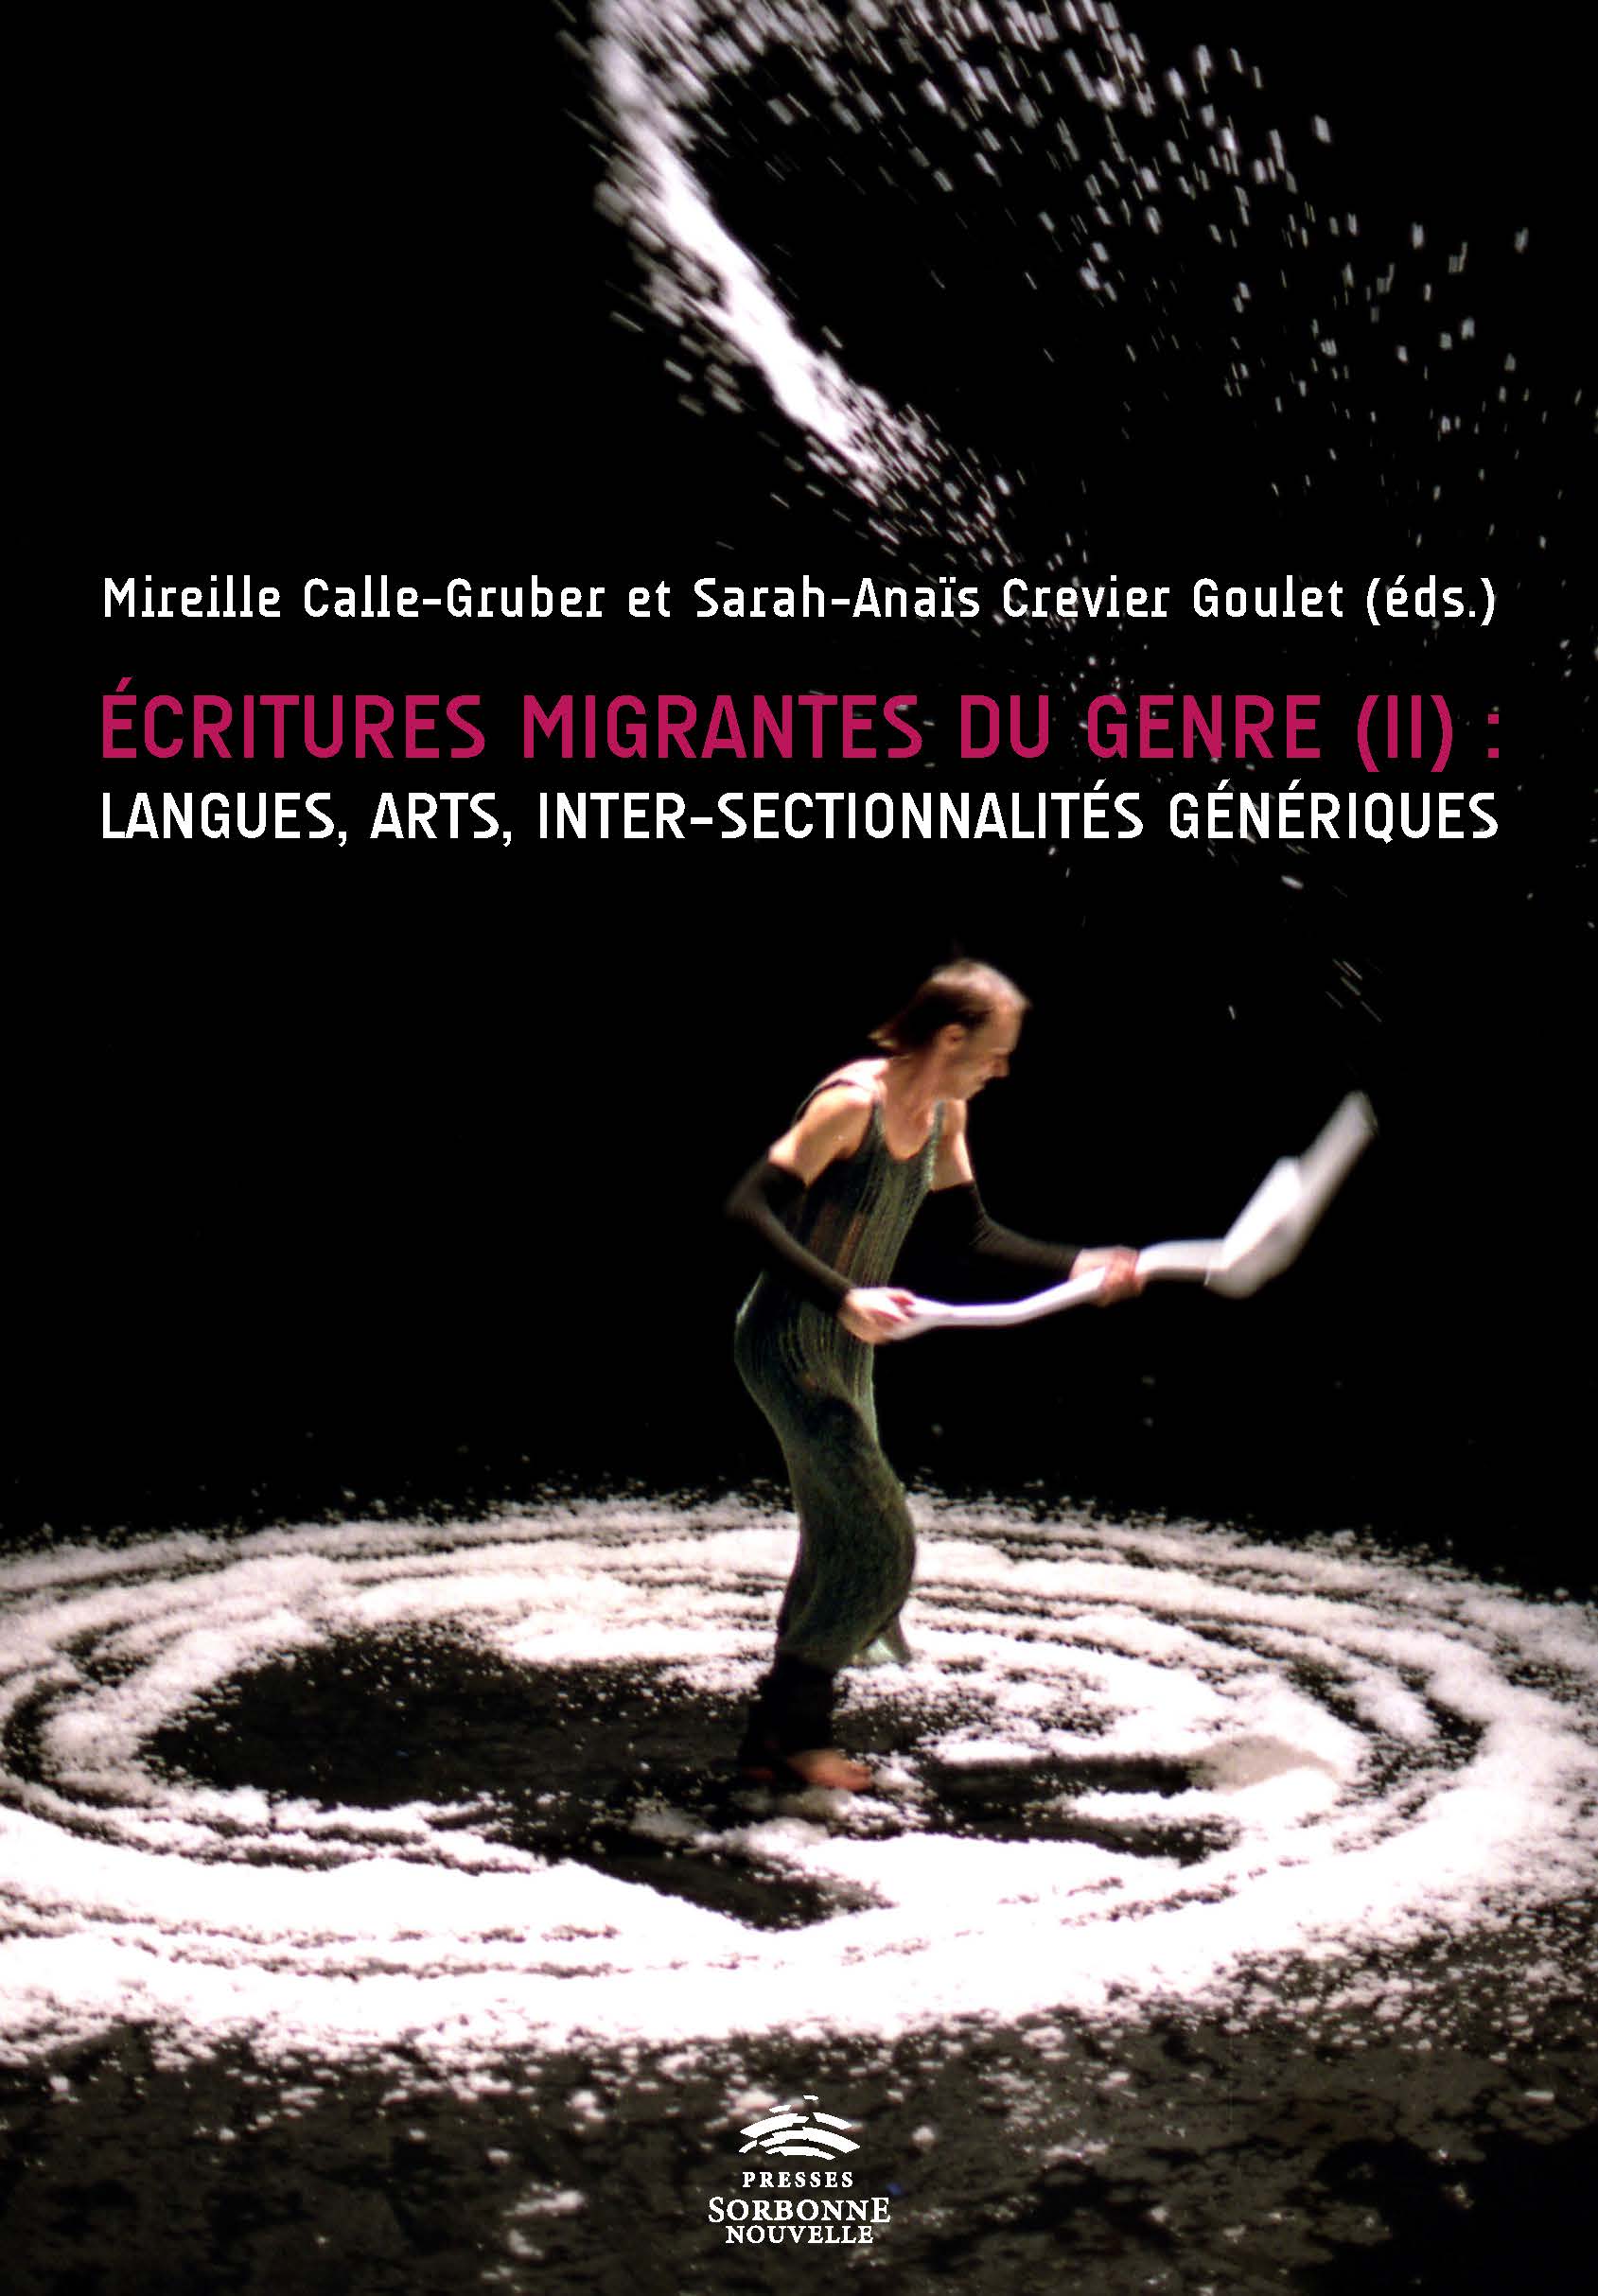 M. Calle-Gruber, S. A. Crevier Goulet (dirs.), Écritures migrantes du genre (II). Langues, arts, inter-sectionnalités génériques